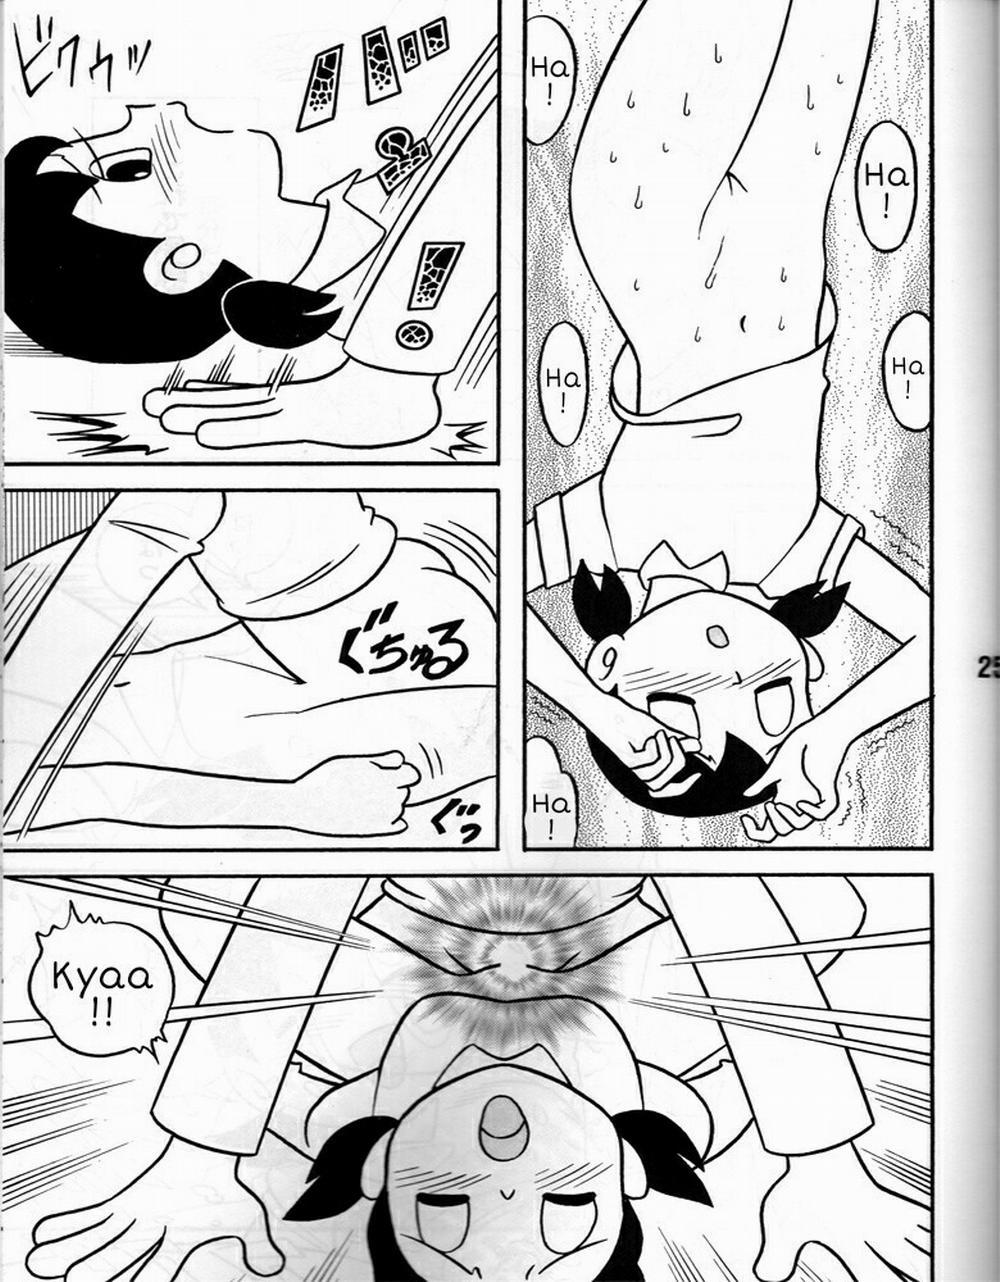 Tuyển Tập Doraemon Doujinshi 18+ Chương 8 H chi u qu sa t ng Trang 6